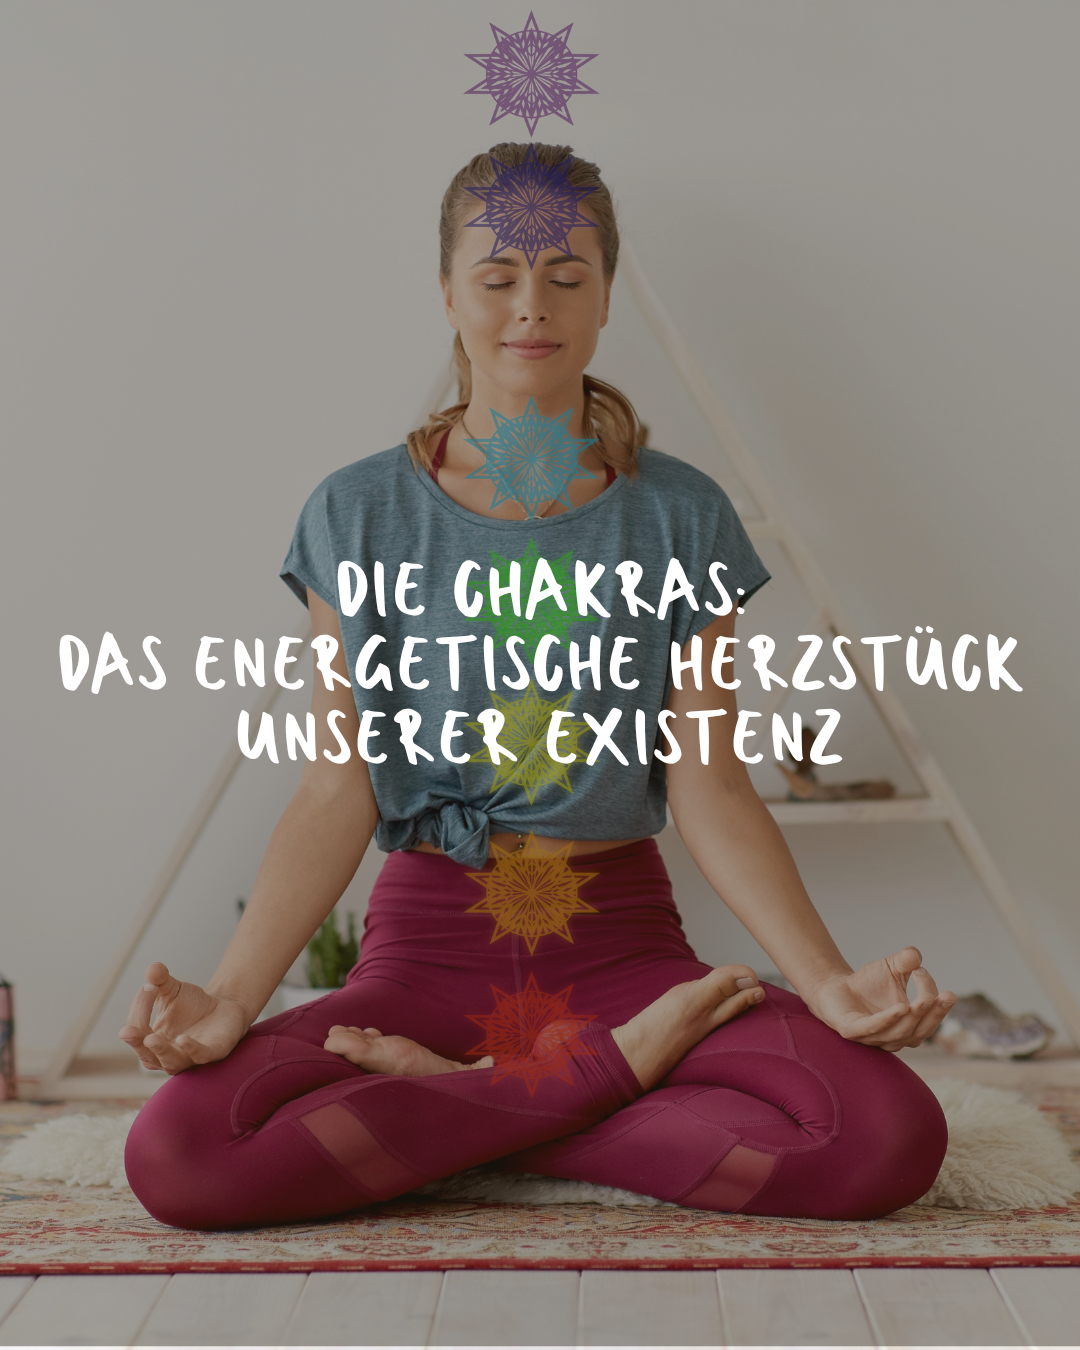 Die Chakras: Das energetische Herzstück unserer Existenz